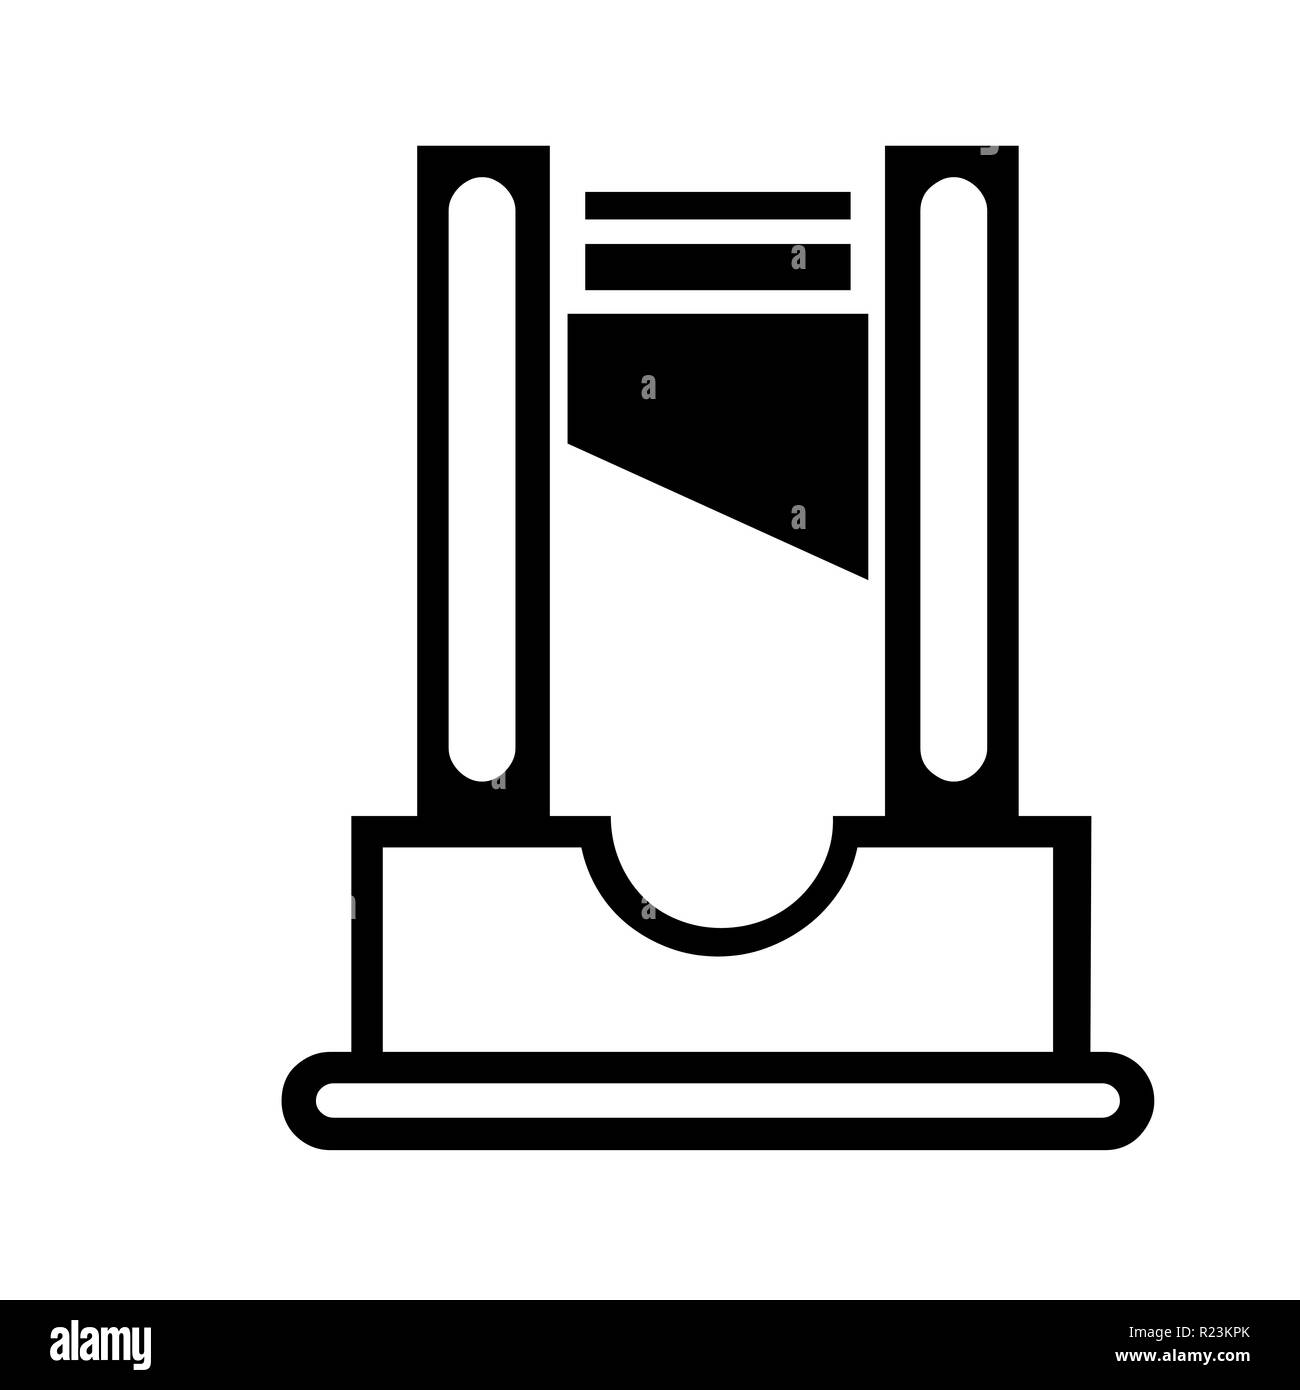 L'icône illustration guillotine avec un fond blanc Banque D'Images